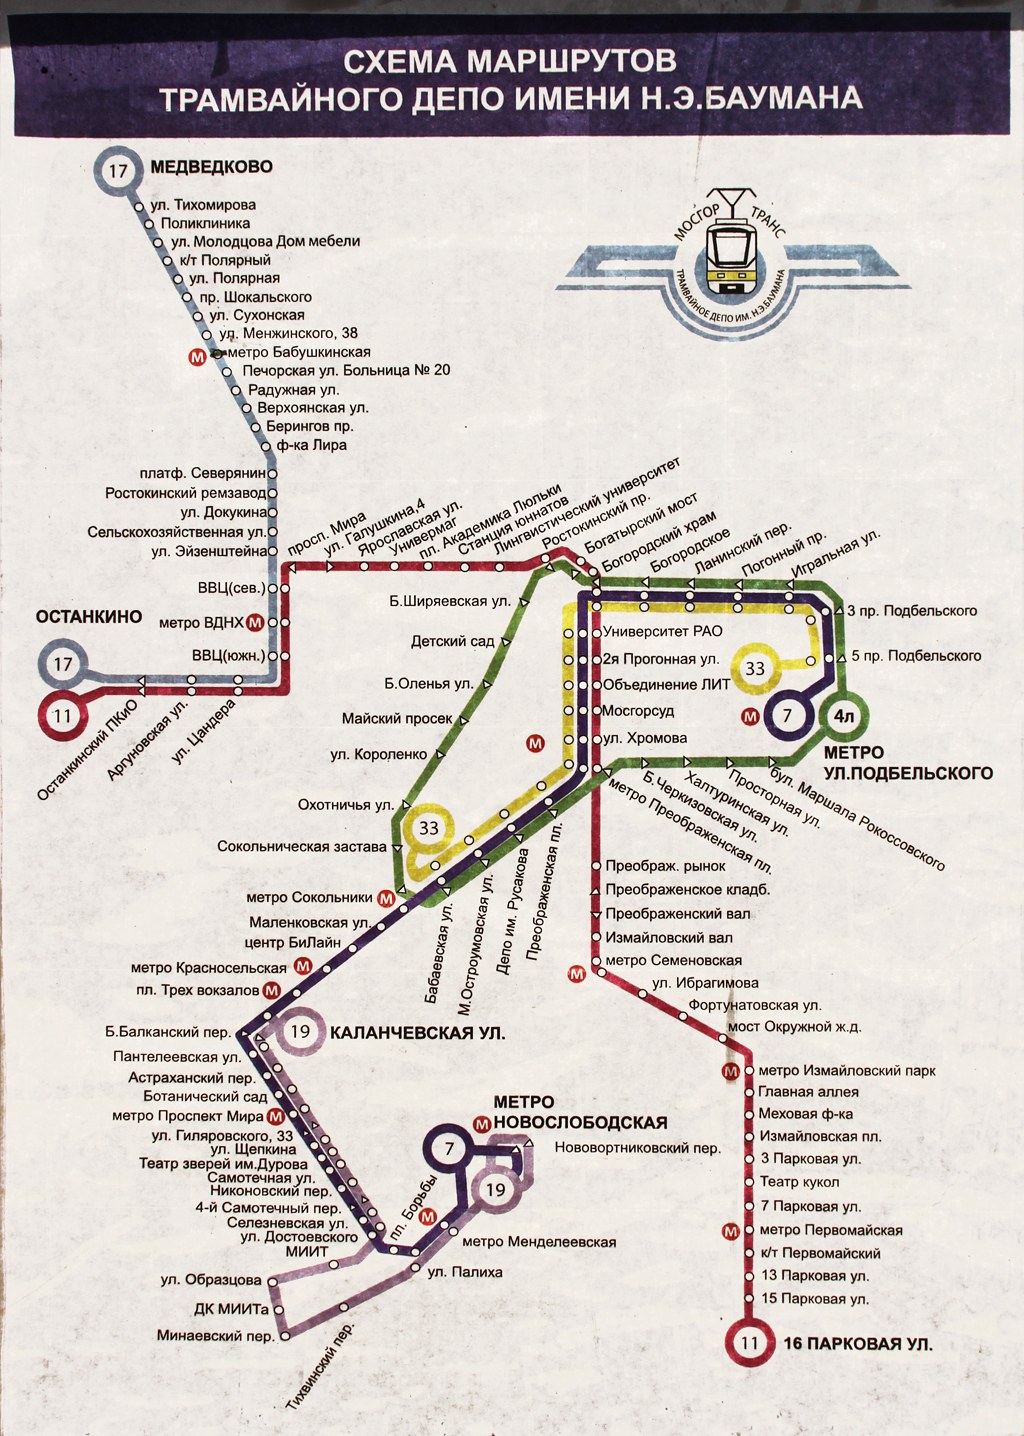 Москва — Салонные и диспетчерские схемы — трамвай